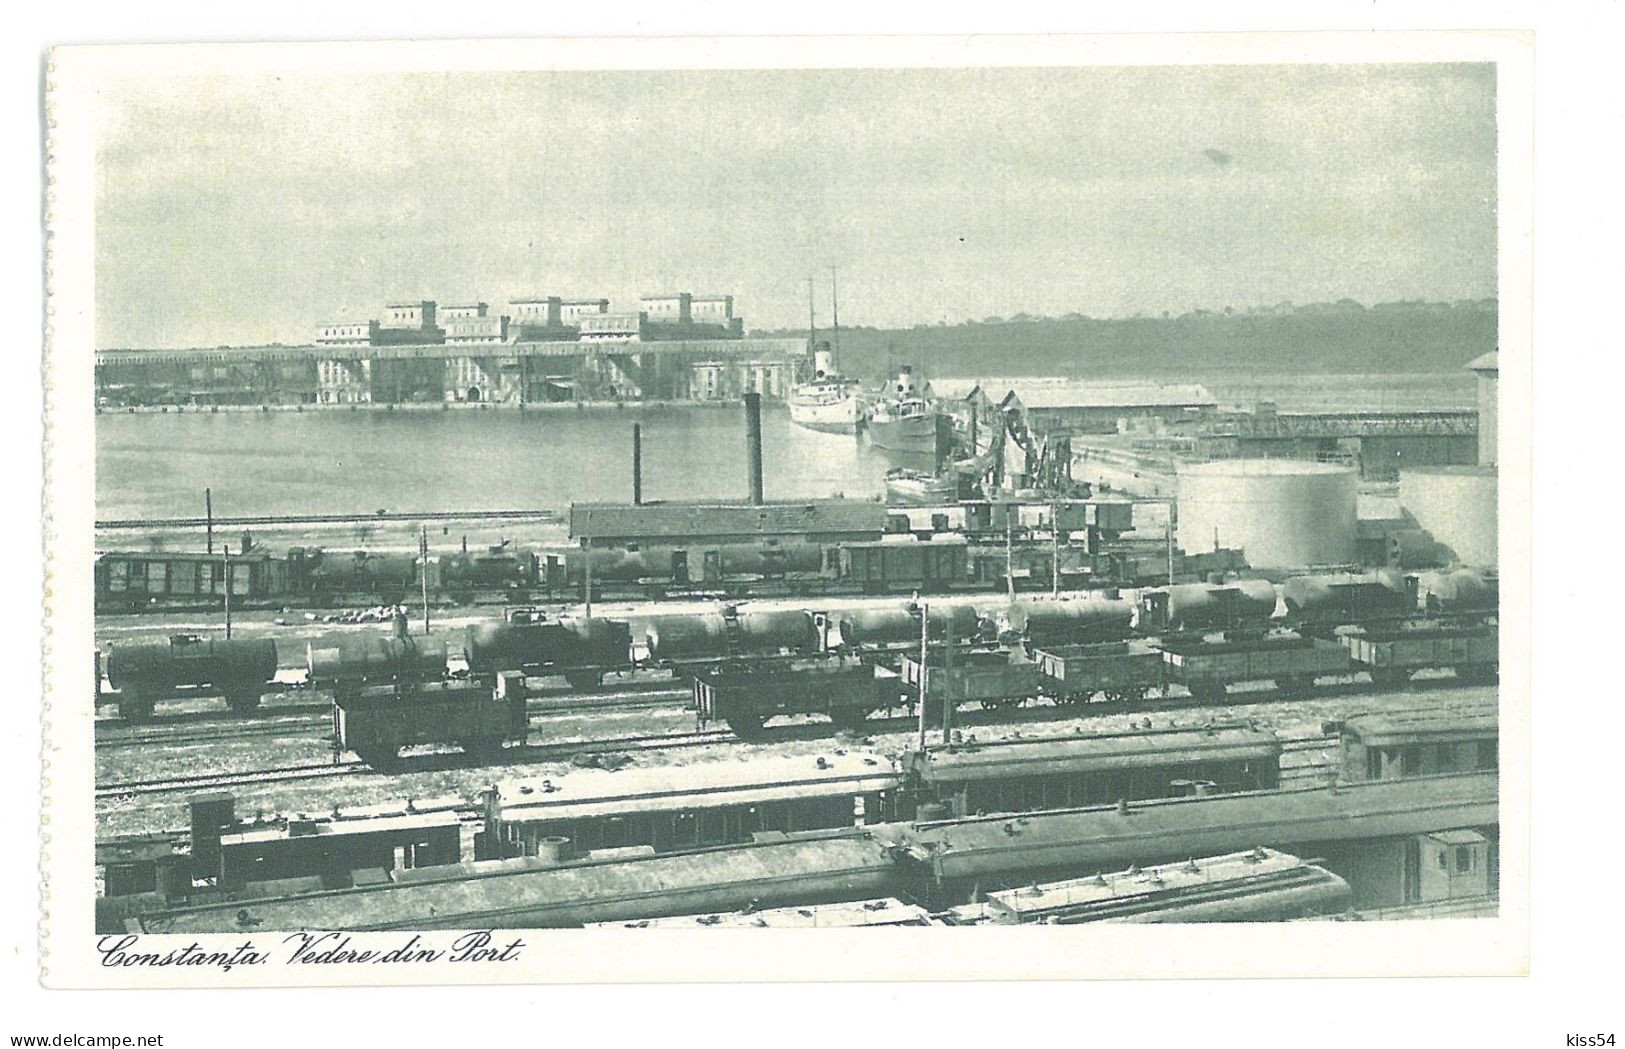 RO 91 - 19326 CONSTANTA, Silozurile, Ships, Train, Romania - Old Postcard - Unused - Roumanie